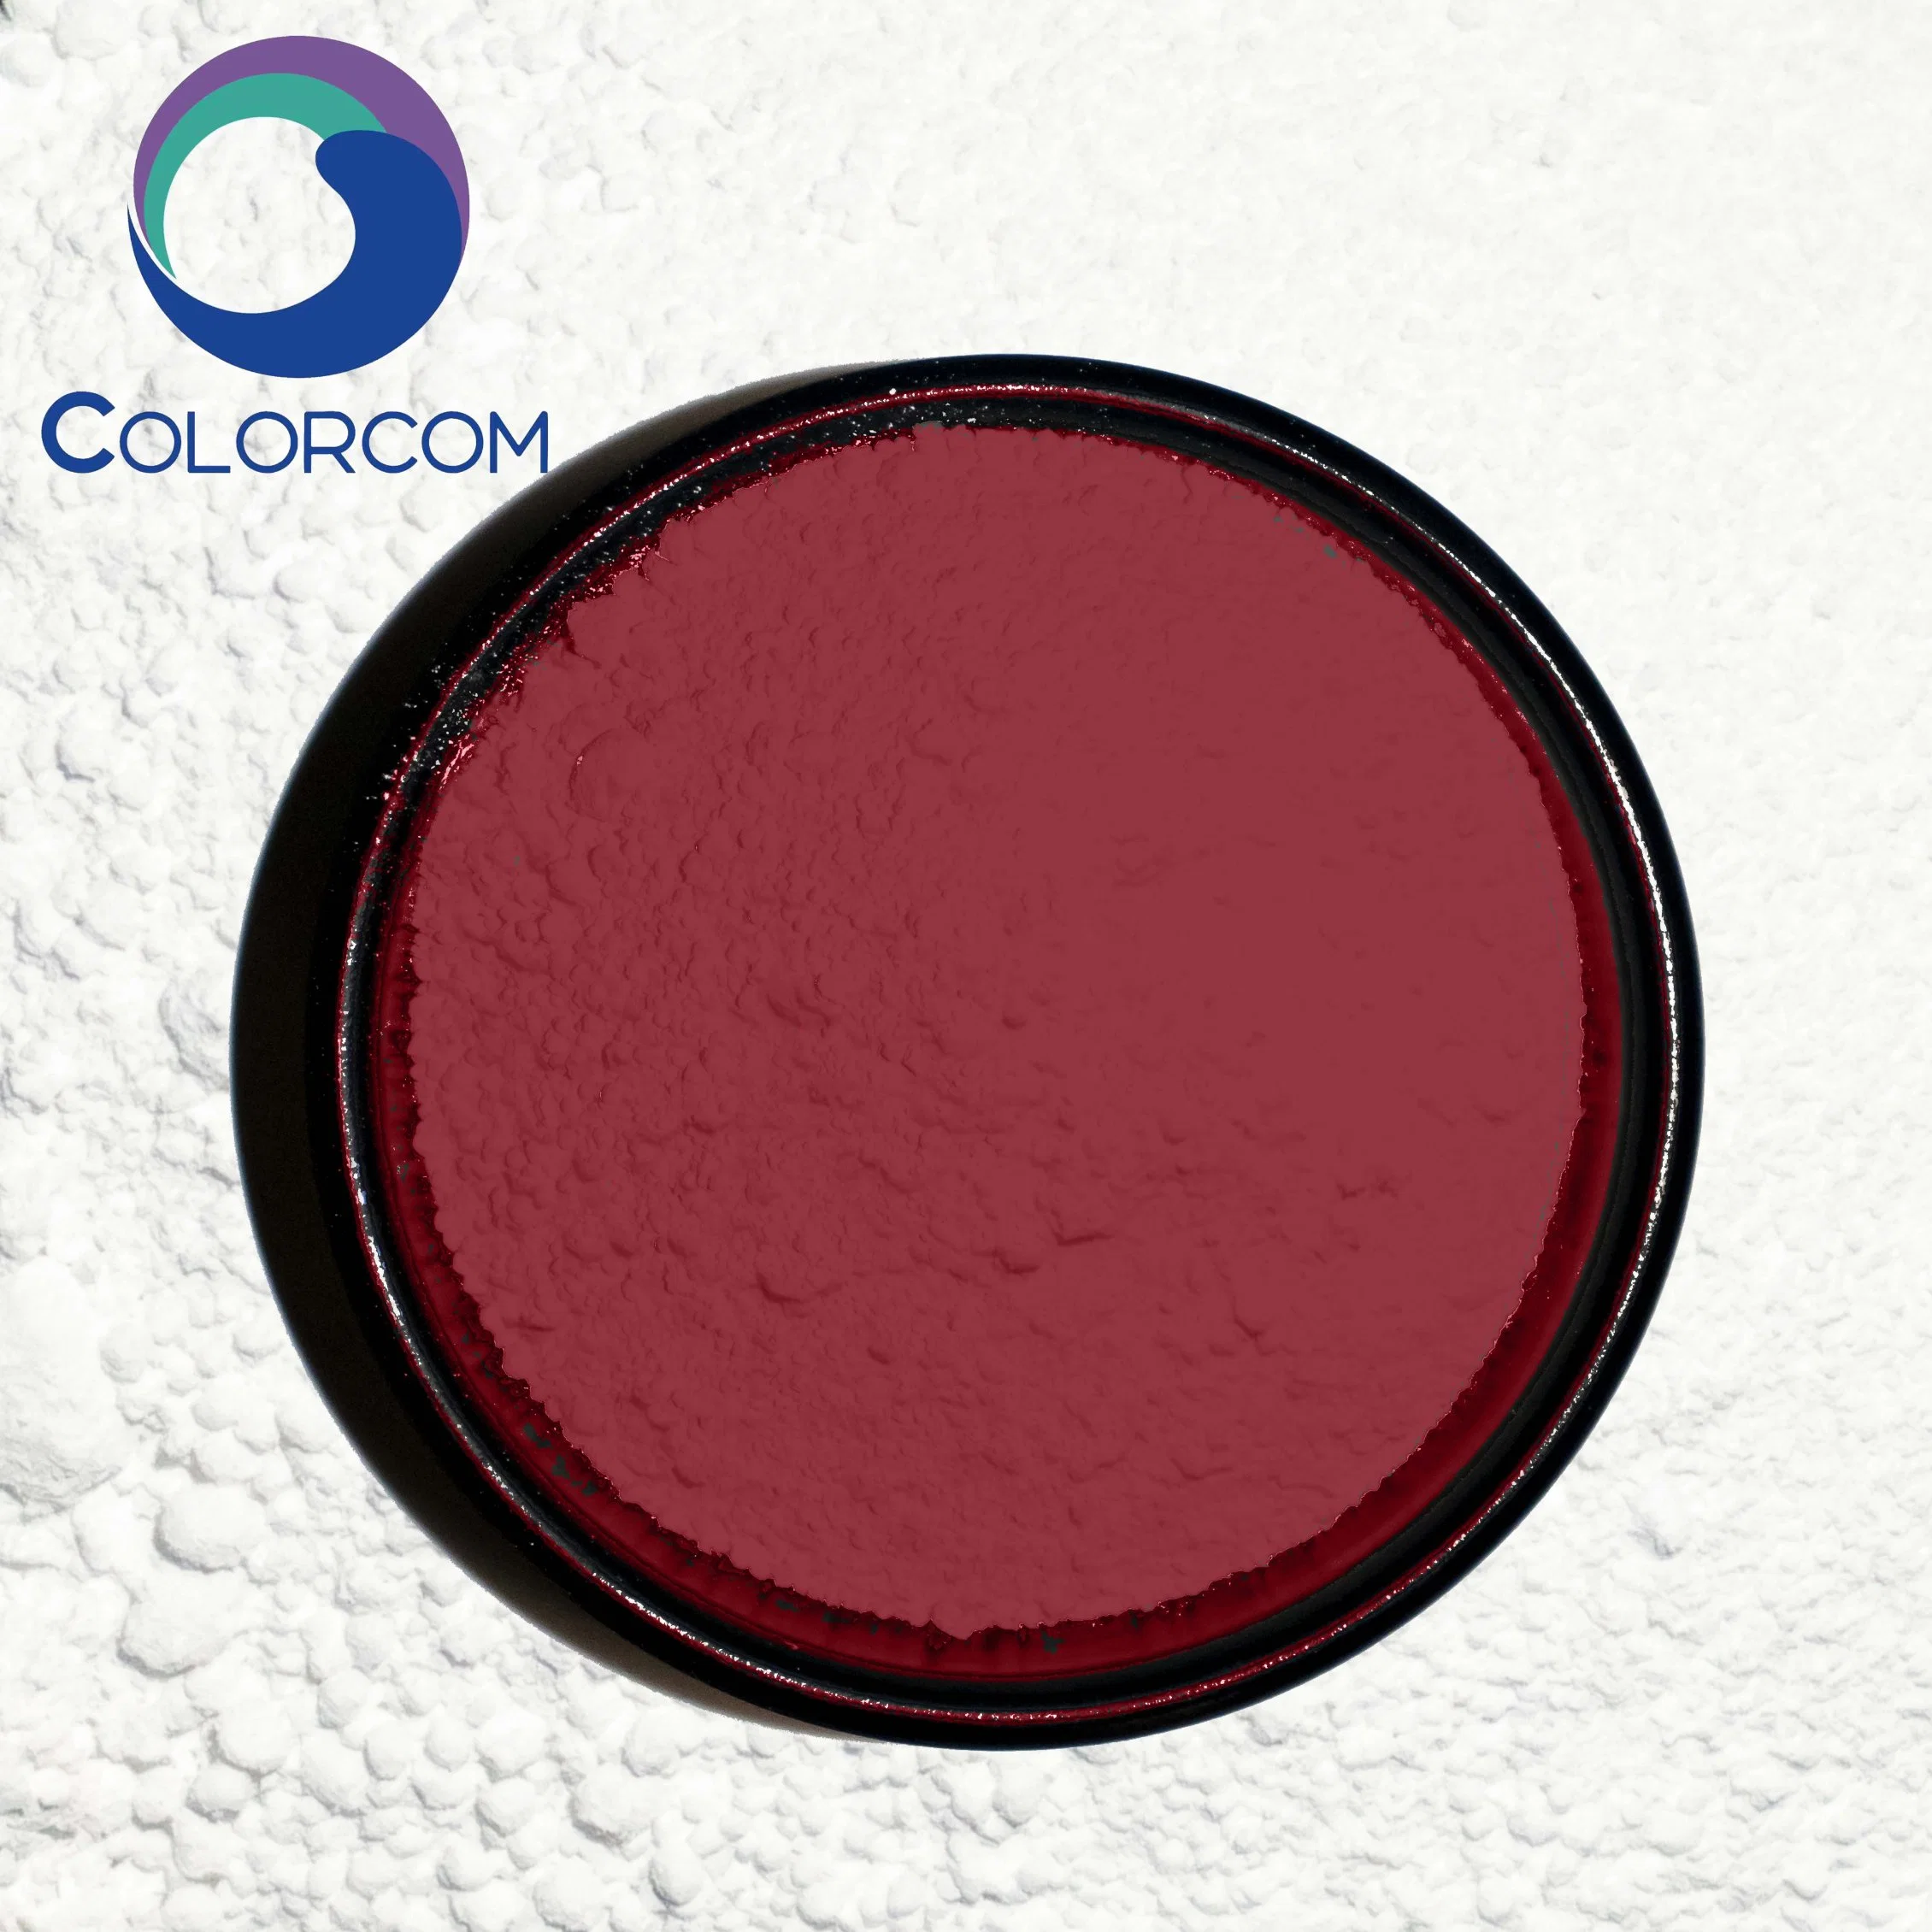 Le Pigment Red 184 pour l'encre et de peinture poudre rouge de pigments organiques